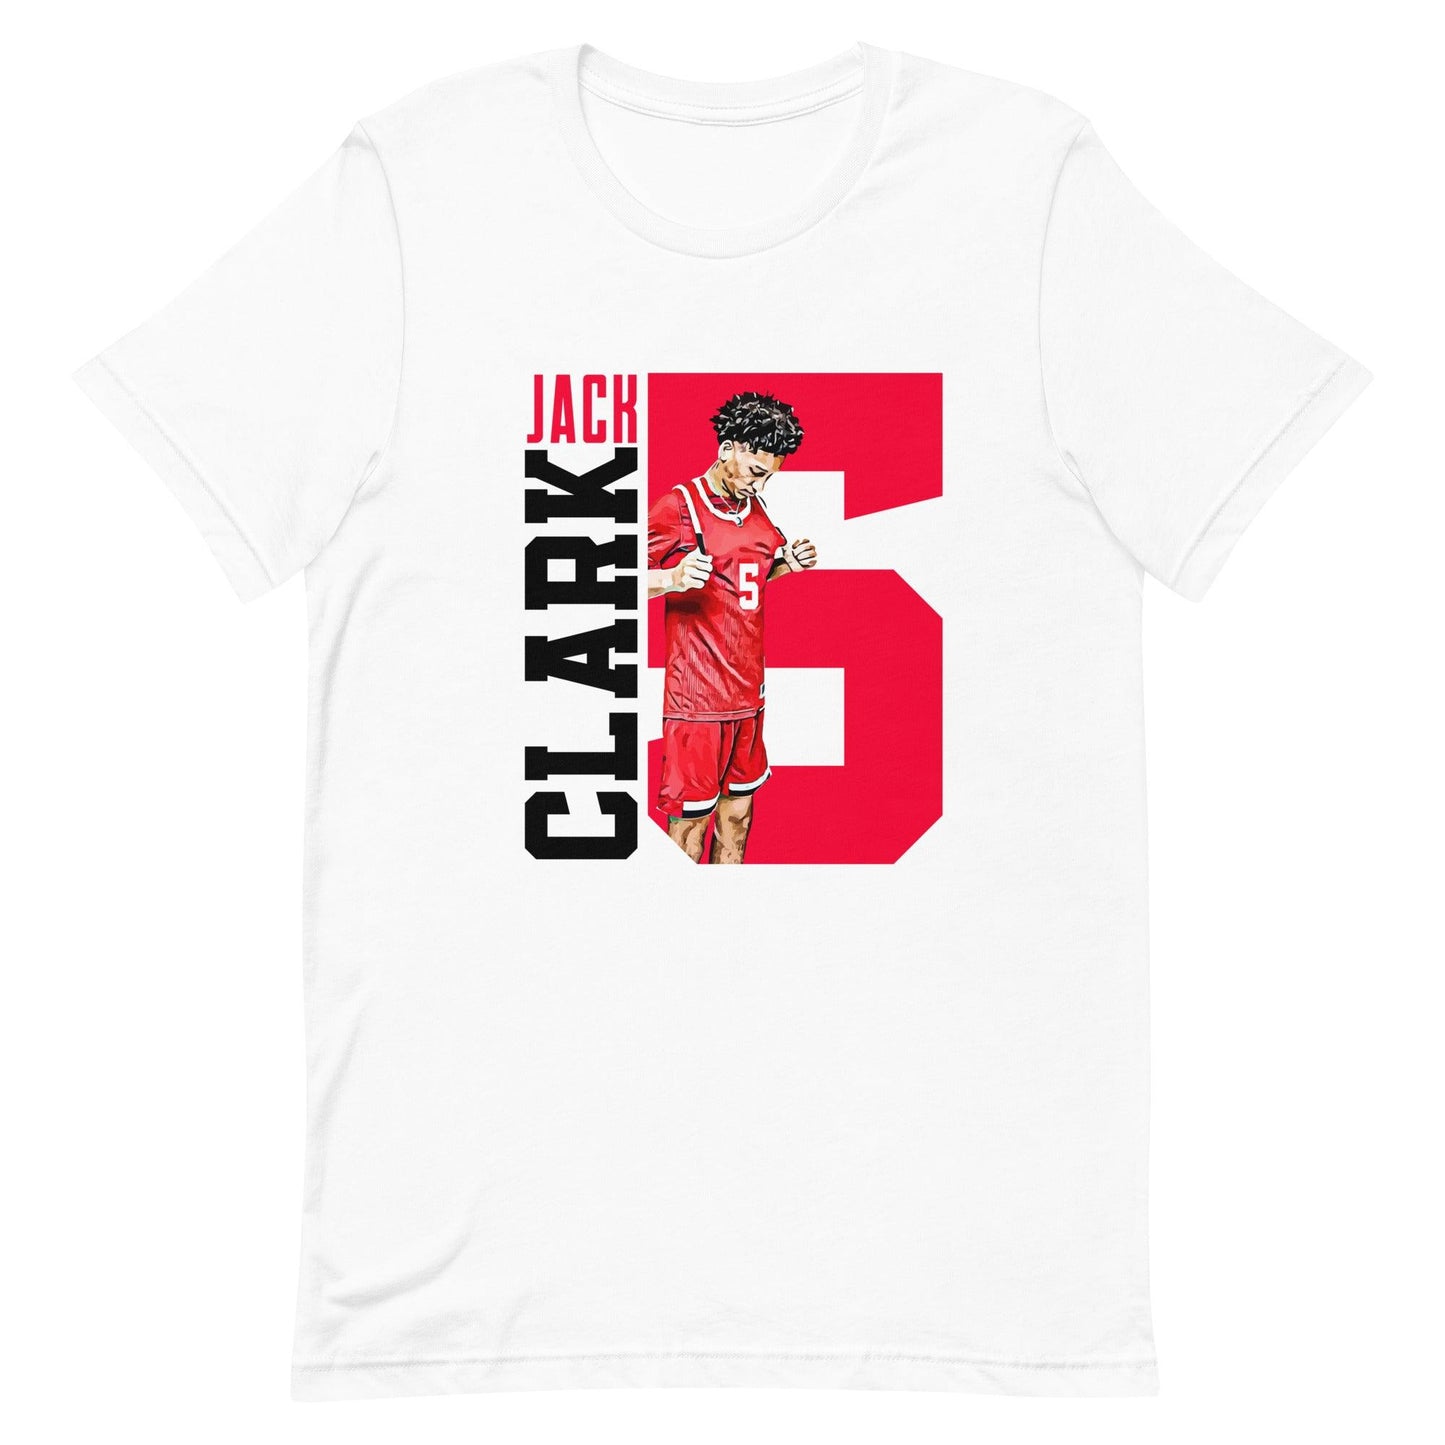 Jack Clark "Gametime" t-shirt - Fan Arch